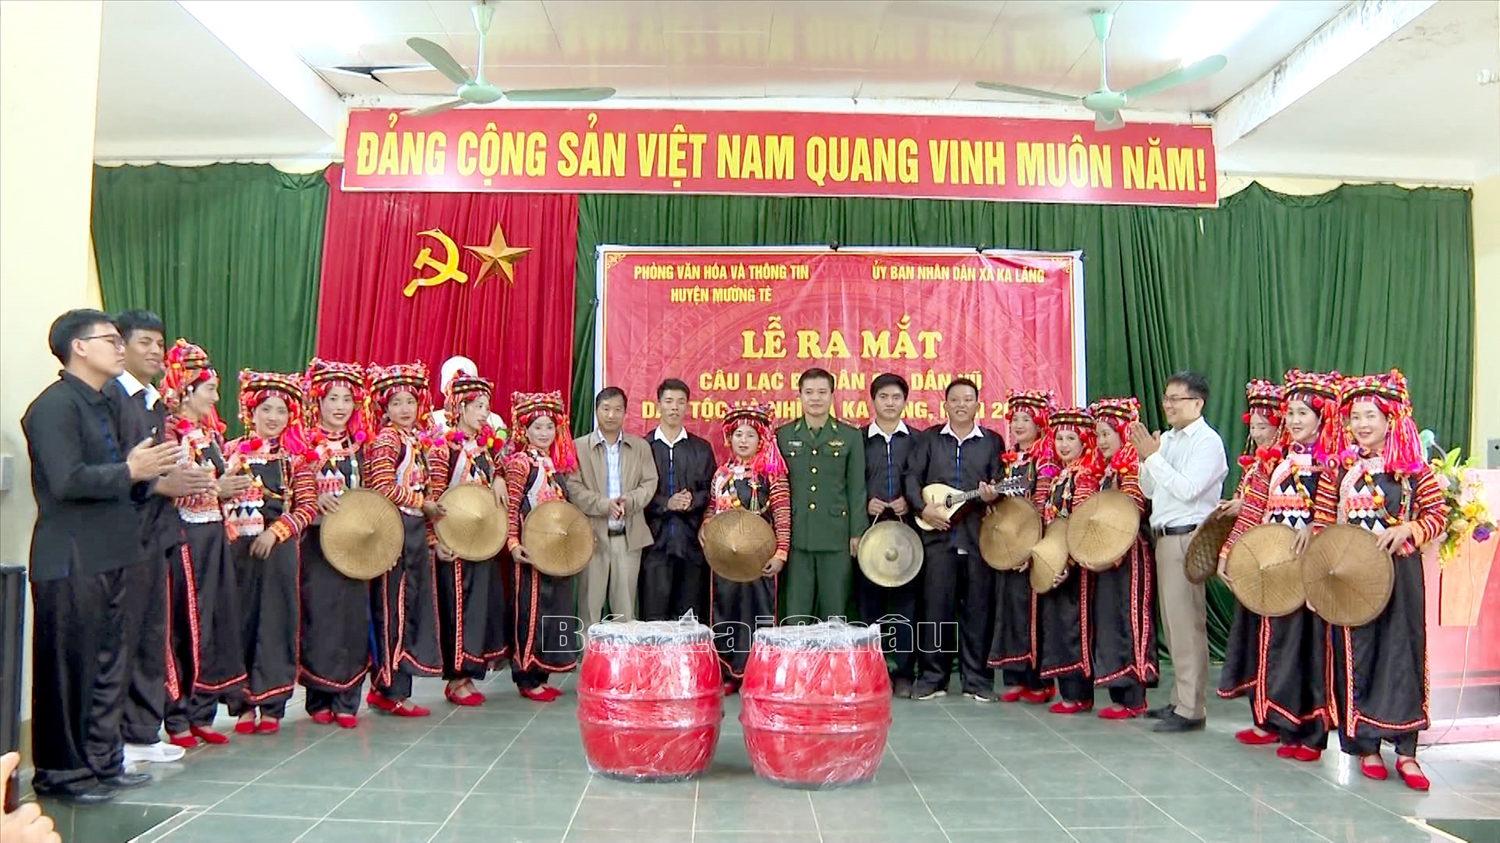 Lễ ra mắt Câu lạc bộ dân ca, dân vũ dân tộc Hà Nhì, xã Ka Lăng, huyện Mường Tè